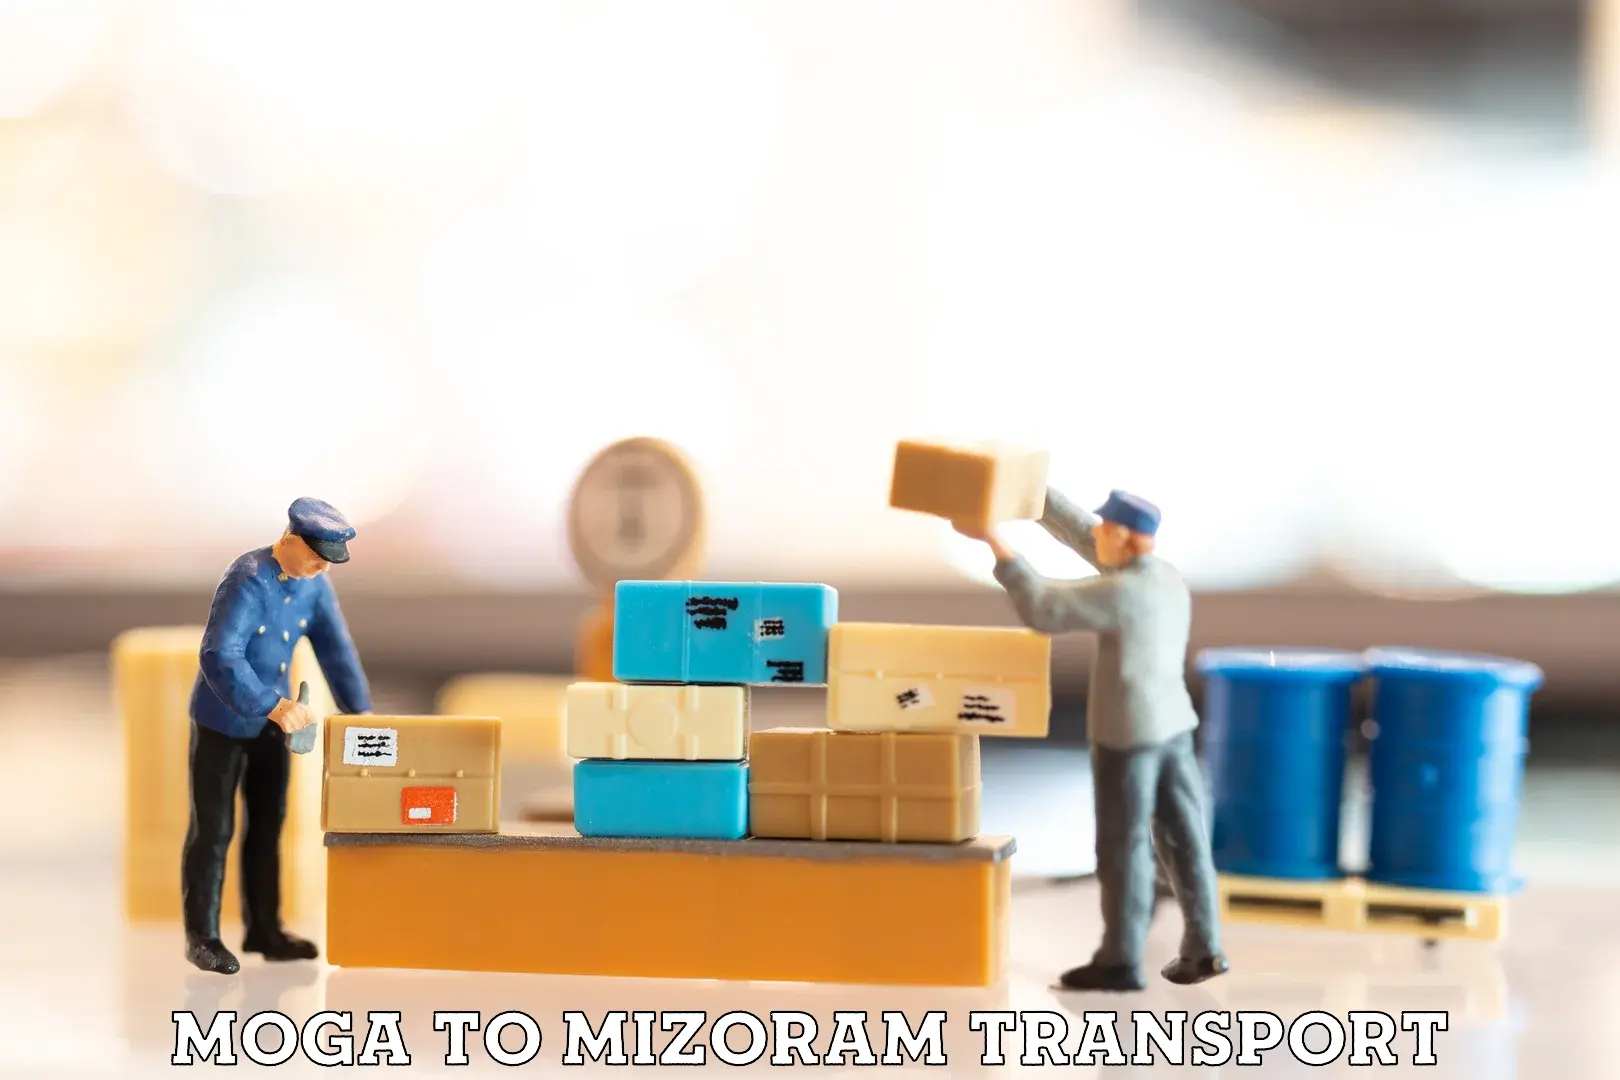 Transport in sharing Moga to Mizoram